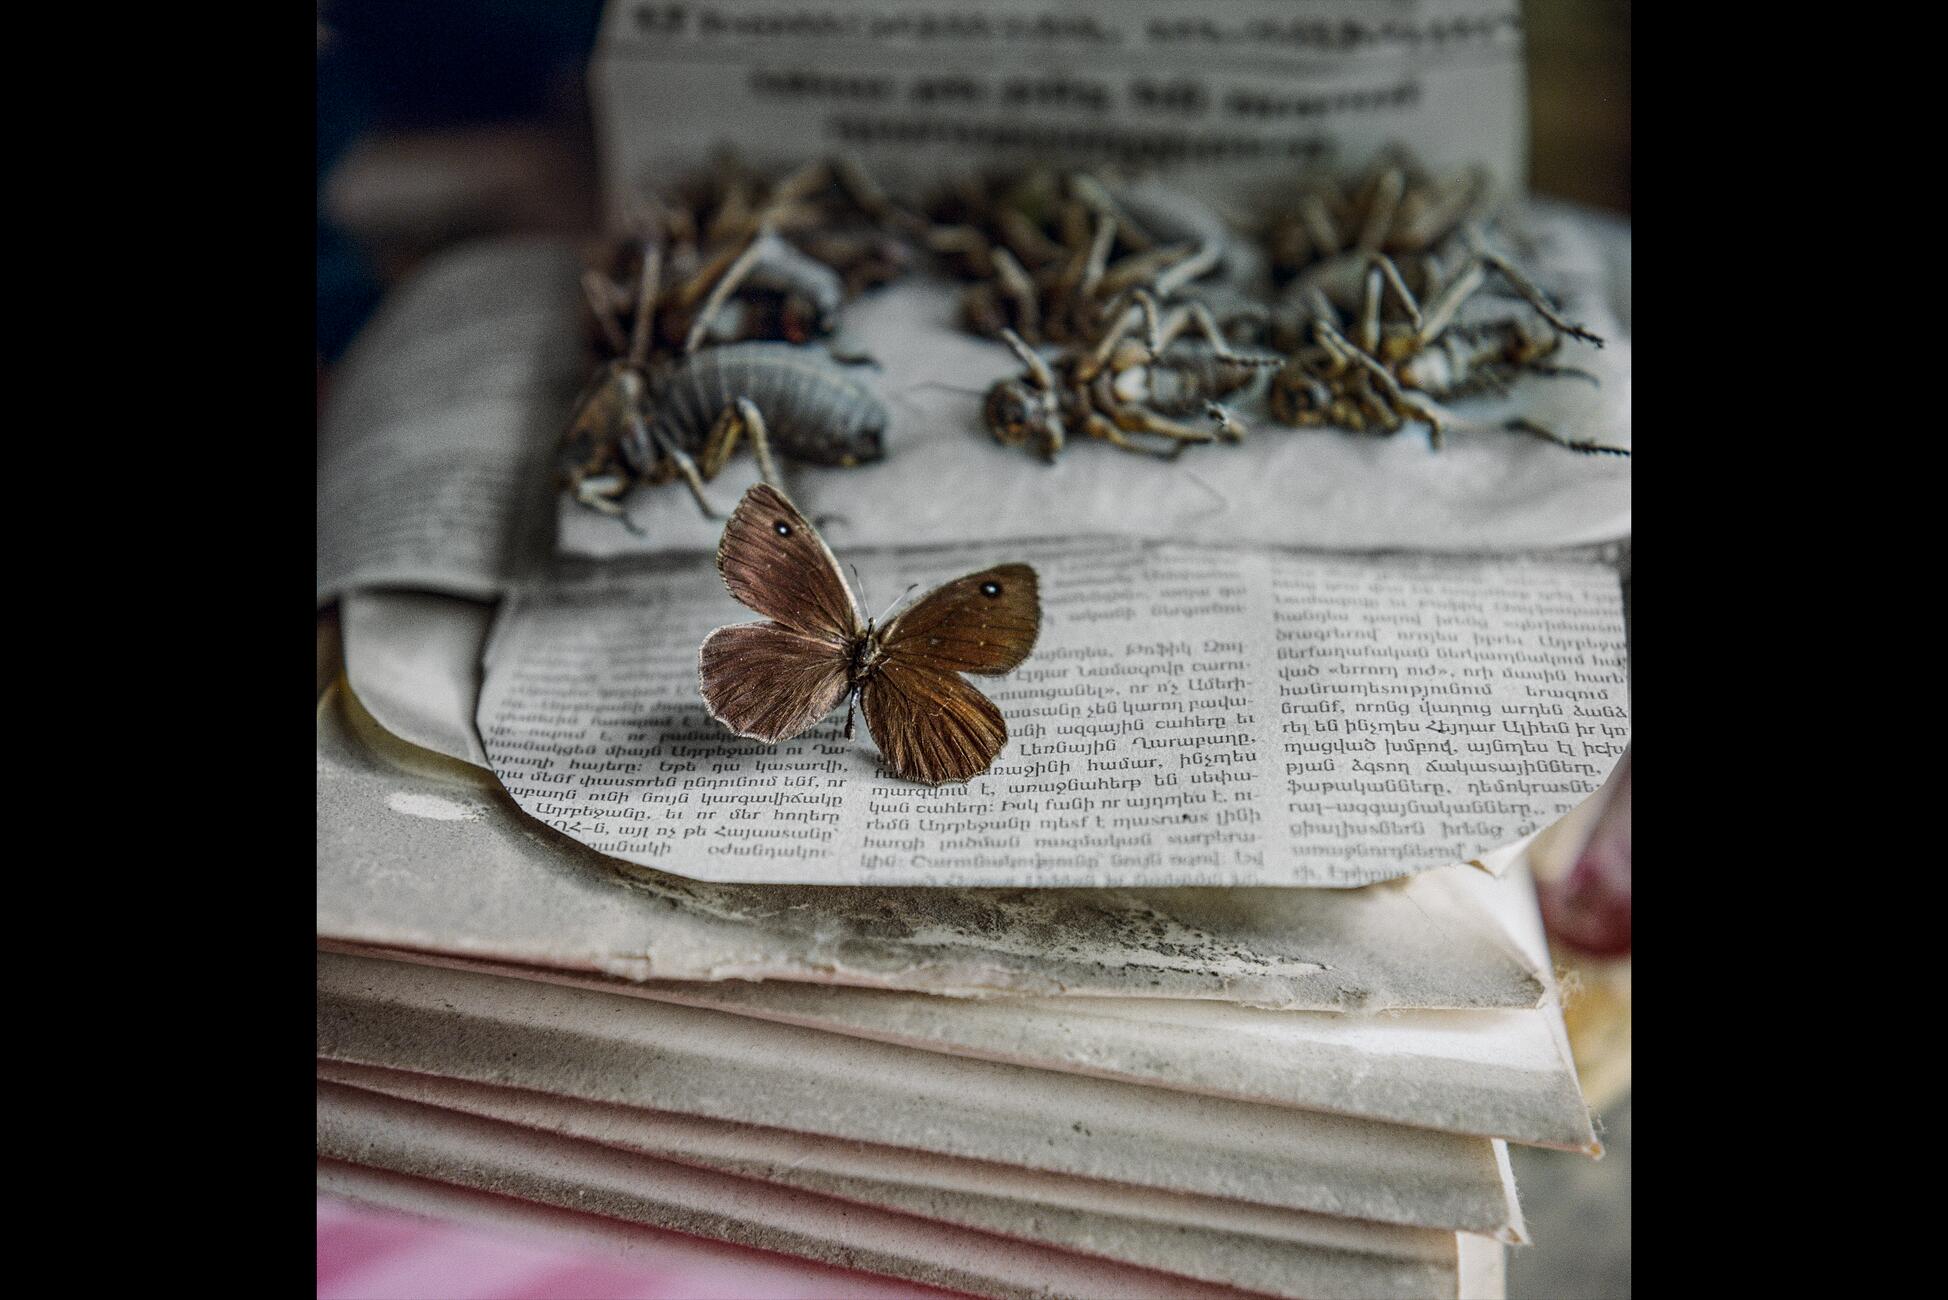 Фотография маленького таксидермированного мотылька с распростертыми крыльями на клочке газеты, за которым скрывается множество других таксидермированных насекомых